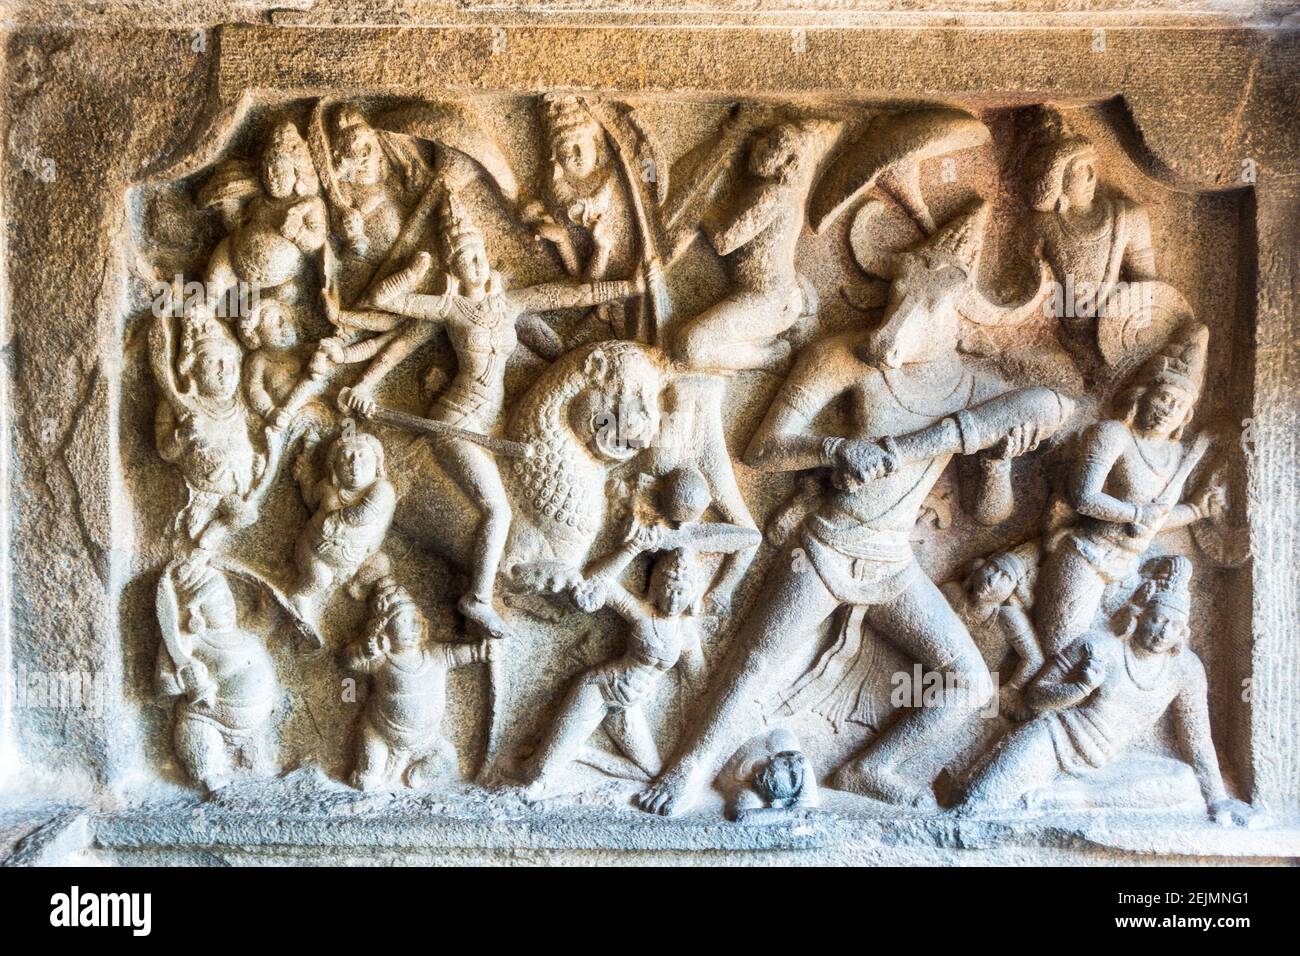 Steinschnitzerei über die hinduistische Mythologie in den riesigen Felsen bei Mahabalipuram, Tamil Nadu, Indien Stockfoto